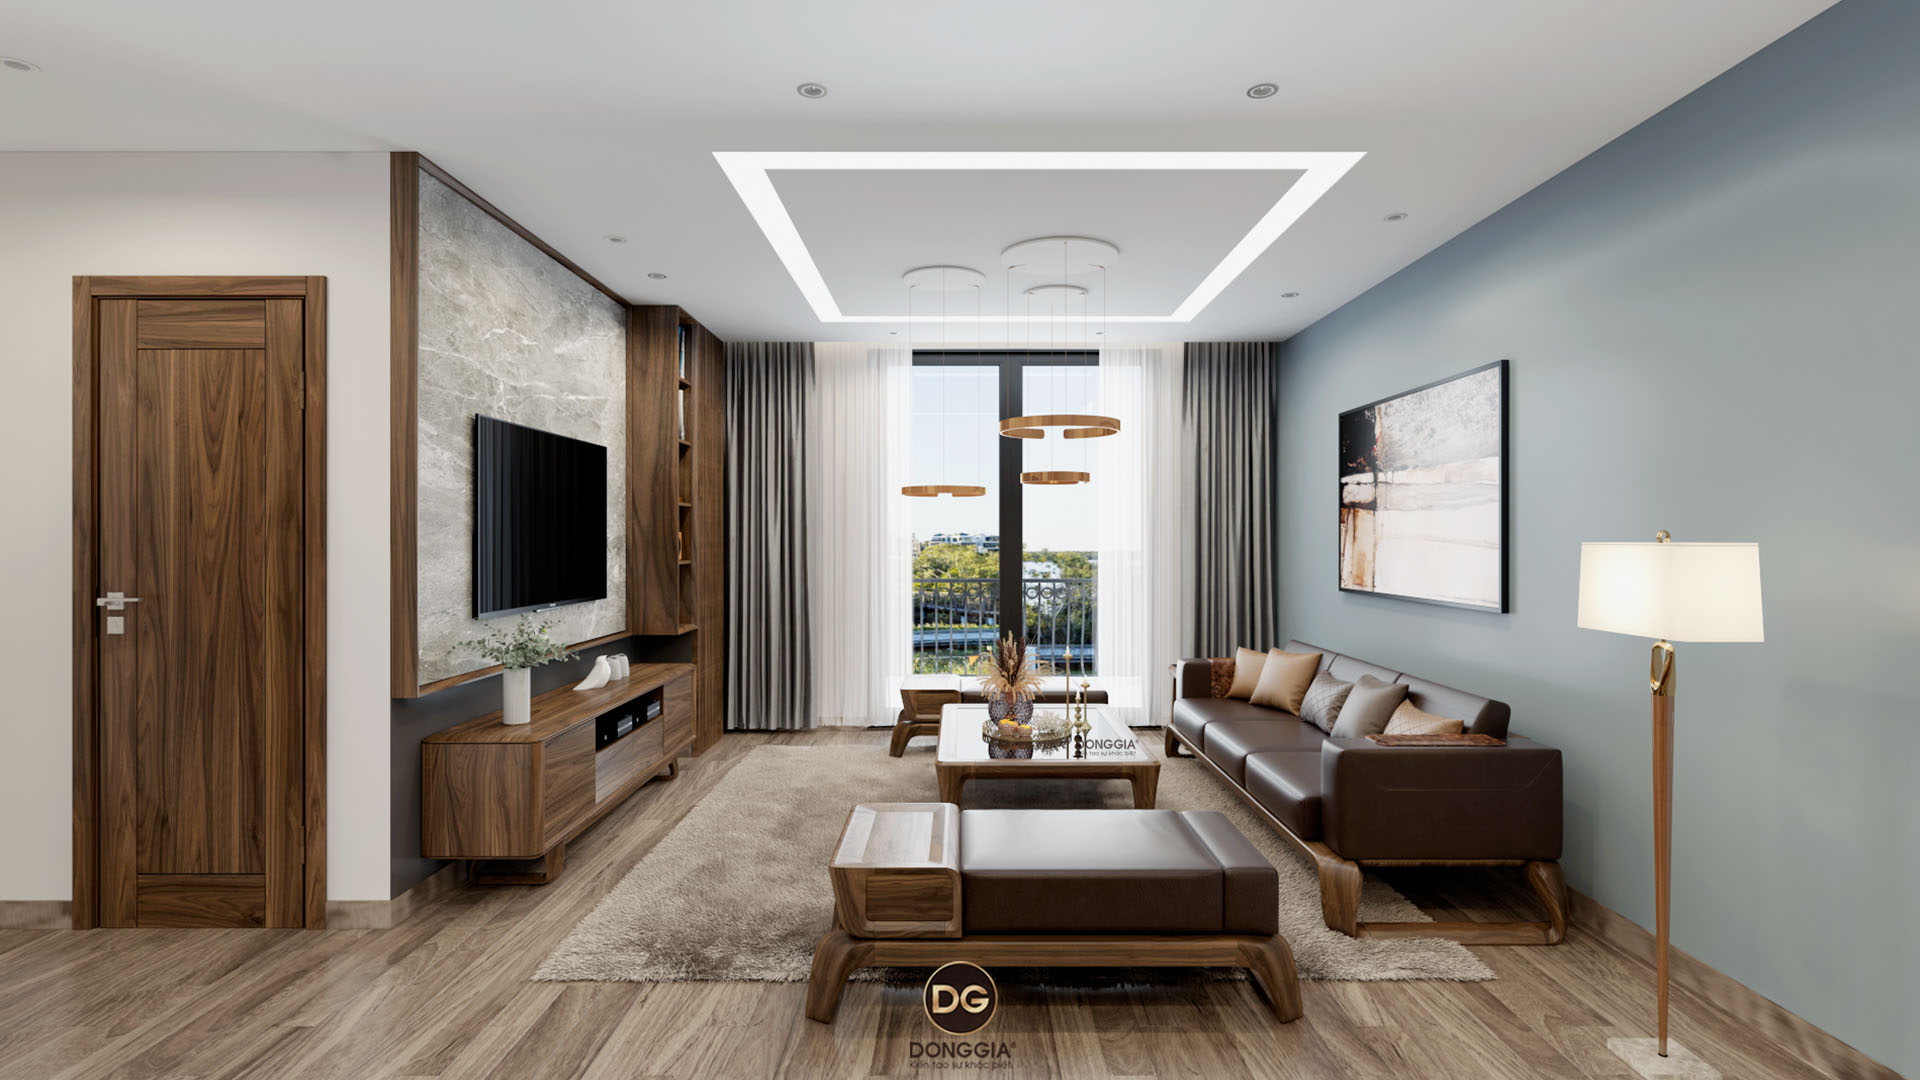 35 Mẫu thiết kế nội thất phòng khách hiện đại đẹp  cập nhật xu hướng